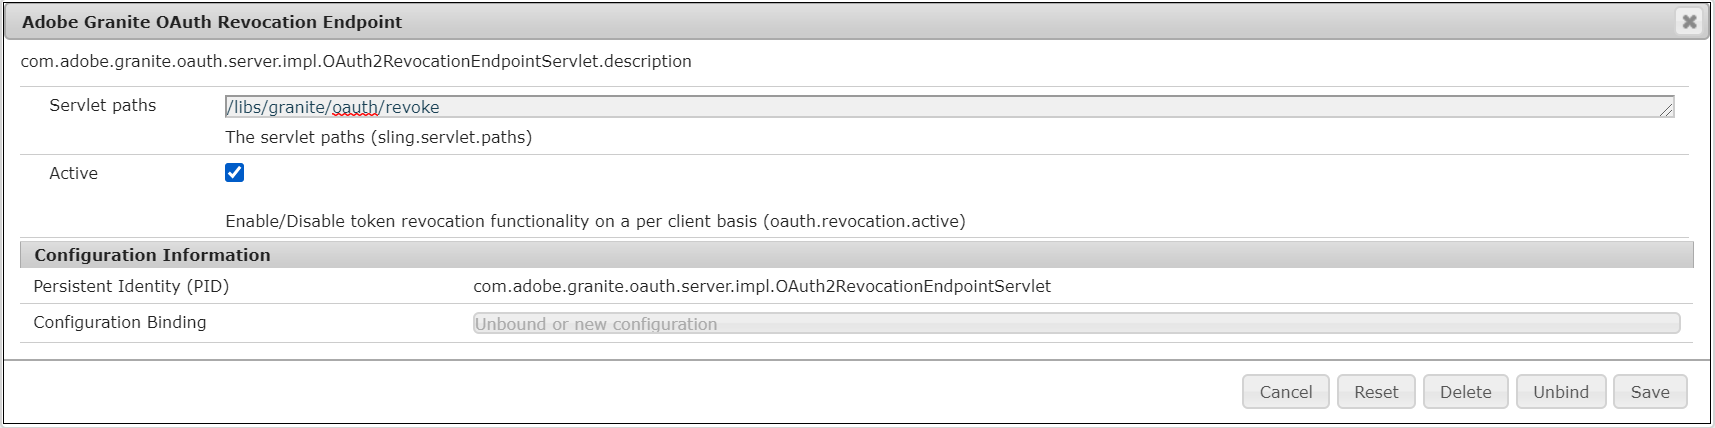 oauth-server-functionalities-in-aem